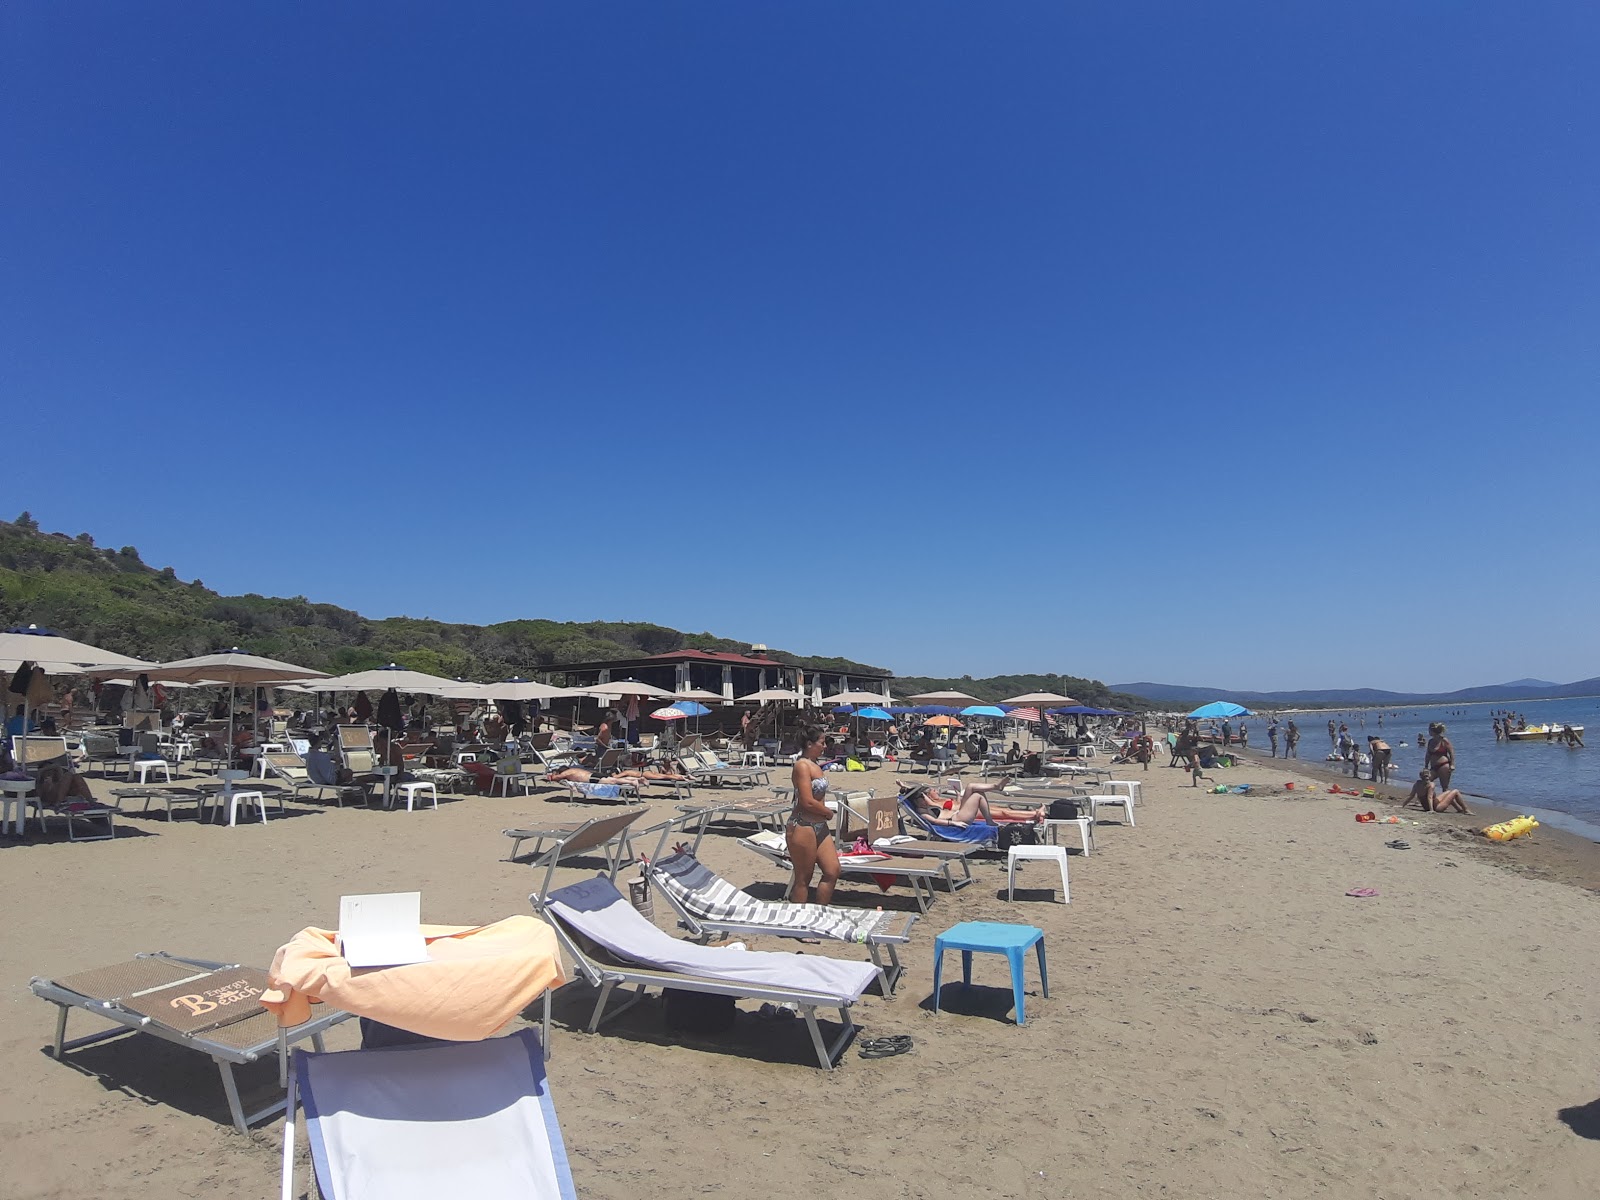 Foto af Spiaggia della Feniglia - populært sted blandt afslapningskendere